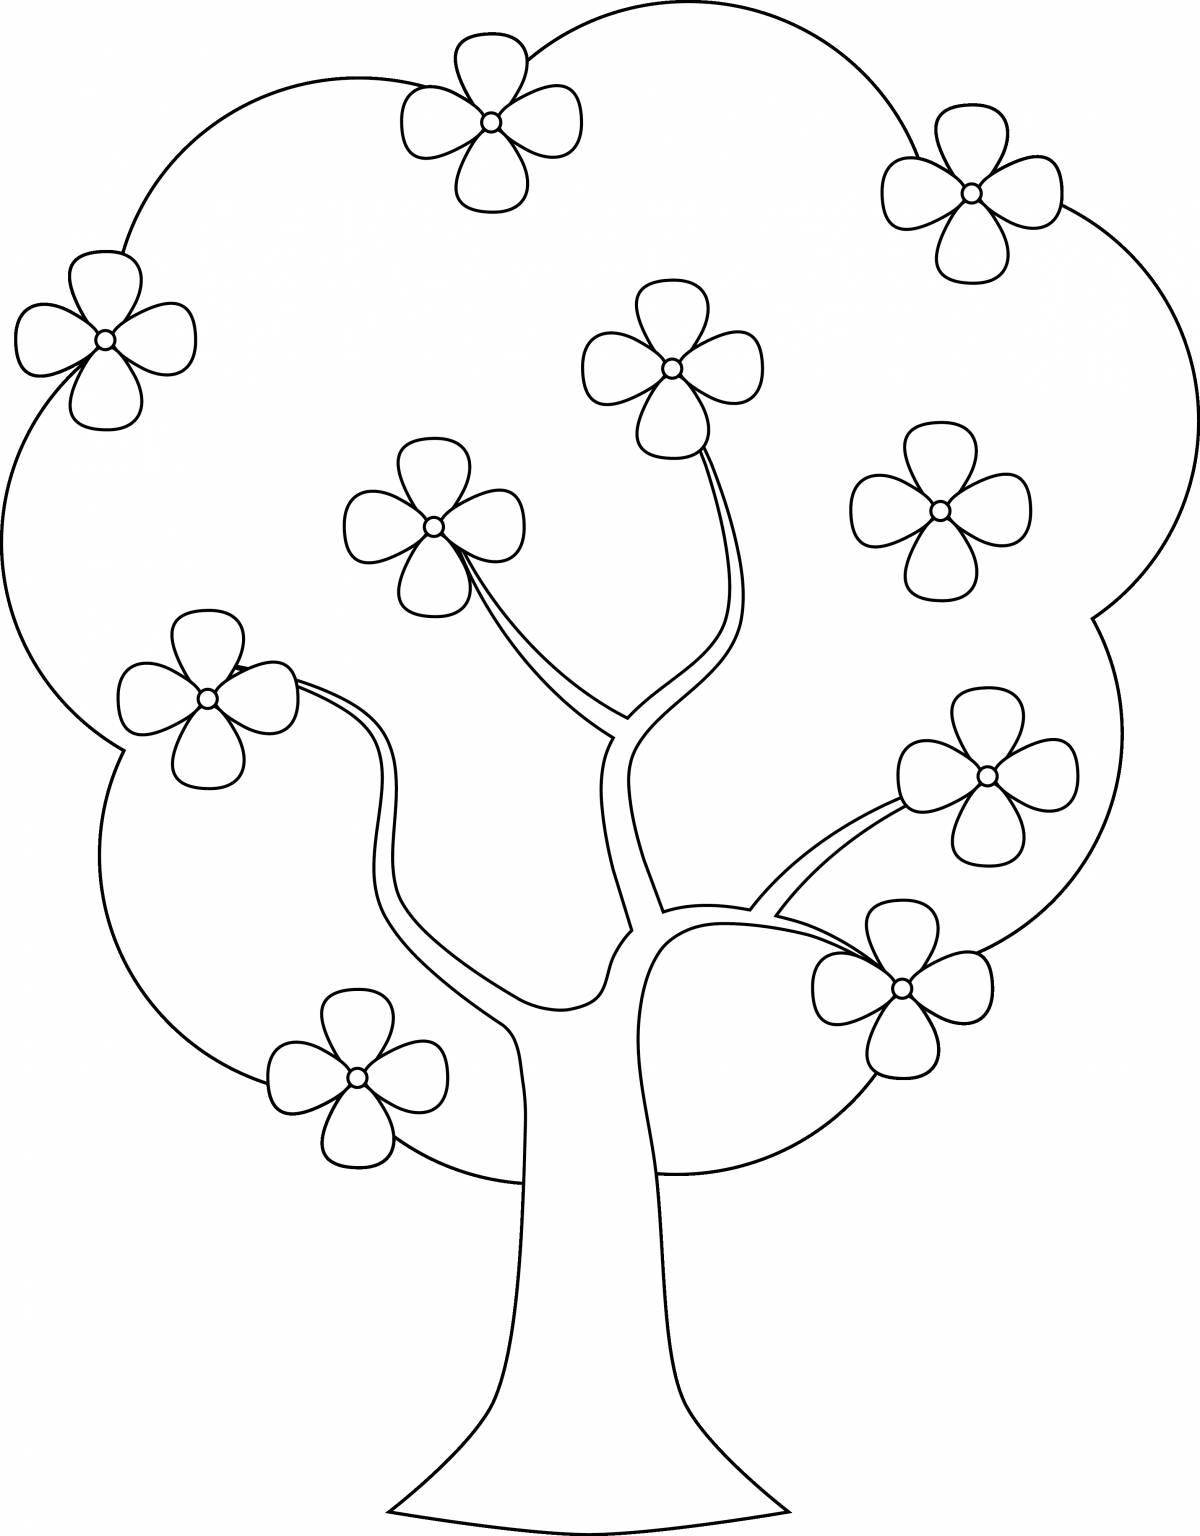 Цветолюбивое рисование деревьев для детей